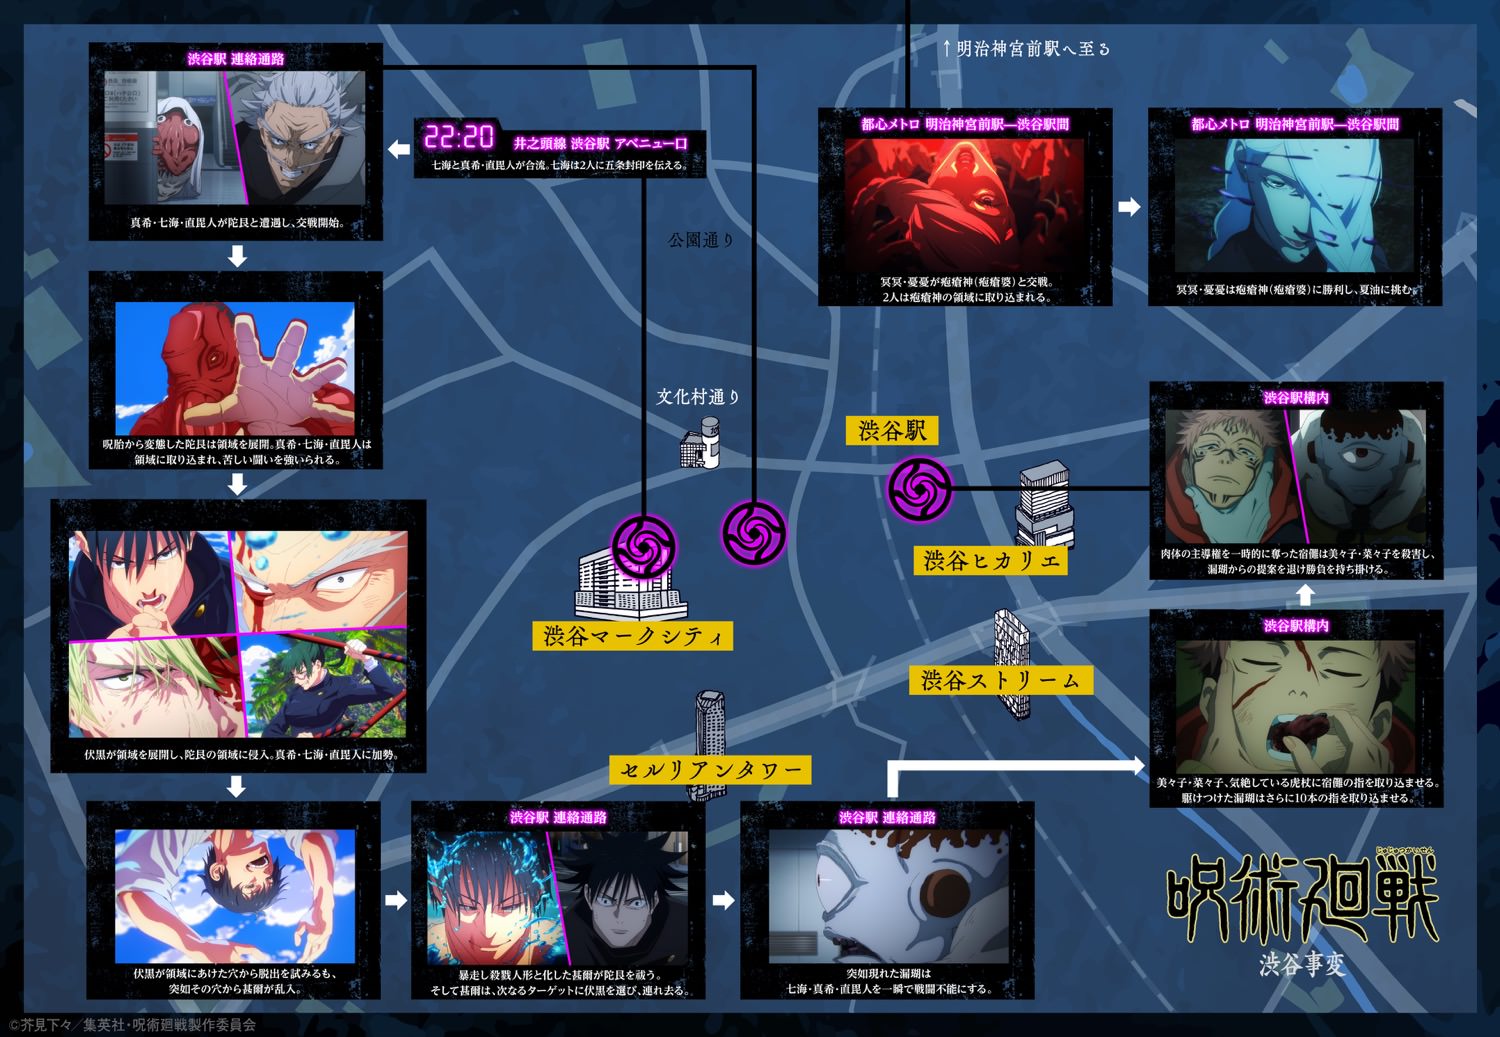 呪術廻戦 アニメ第2期 渋谷事変の出来事を時系列でまとめたマップ更新!